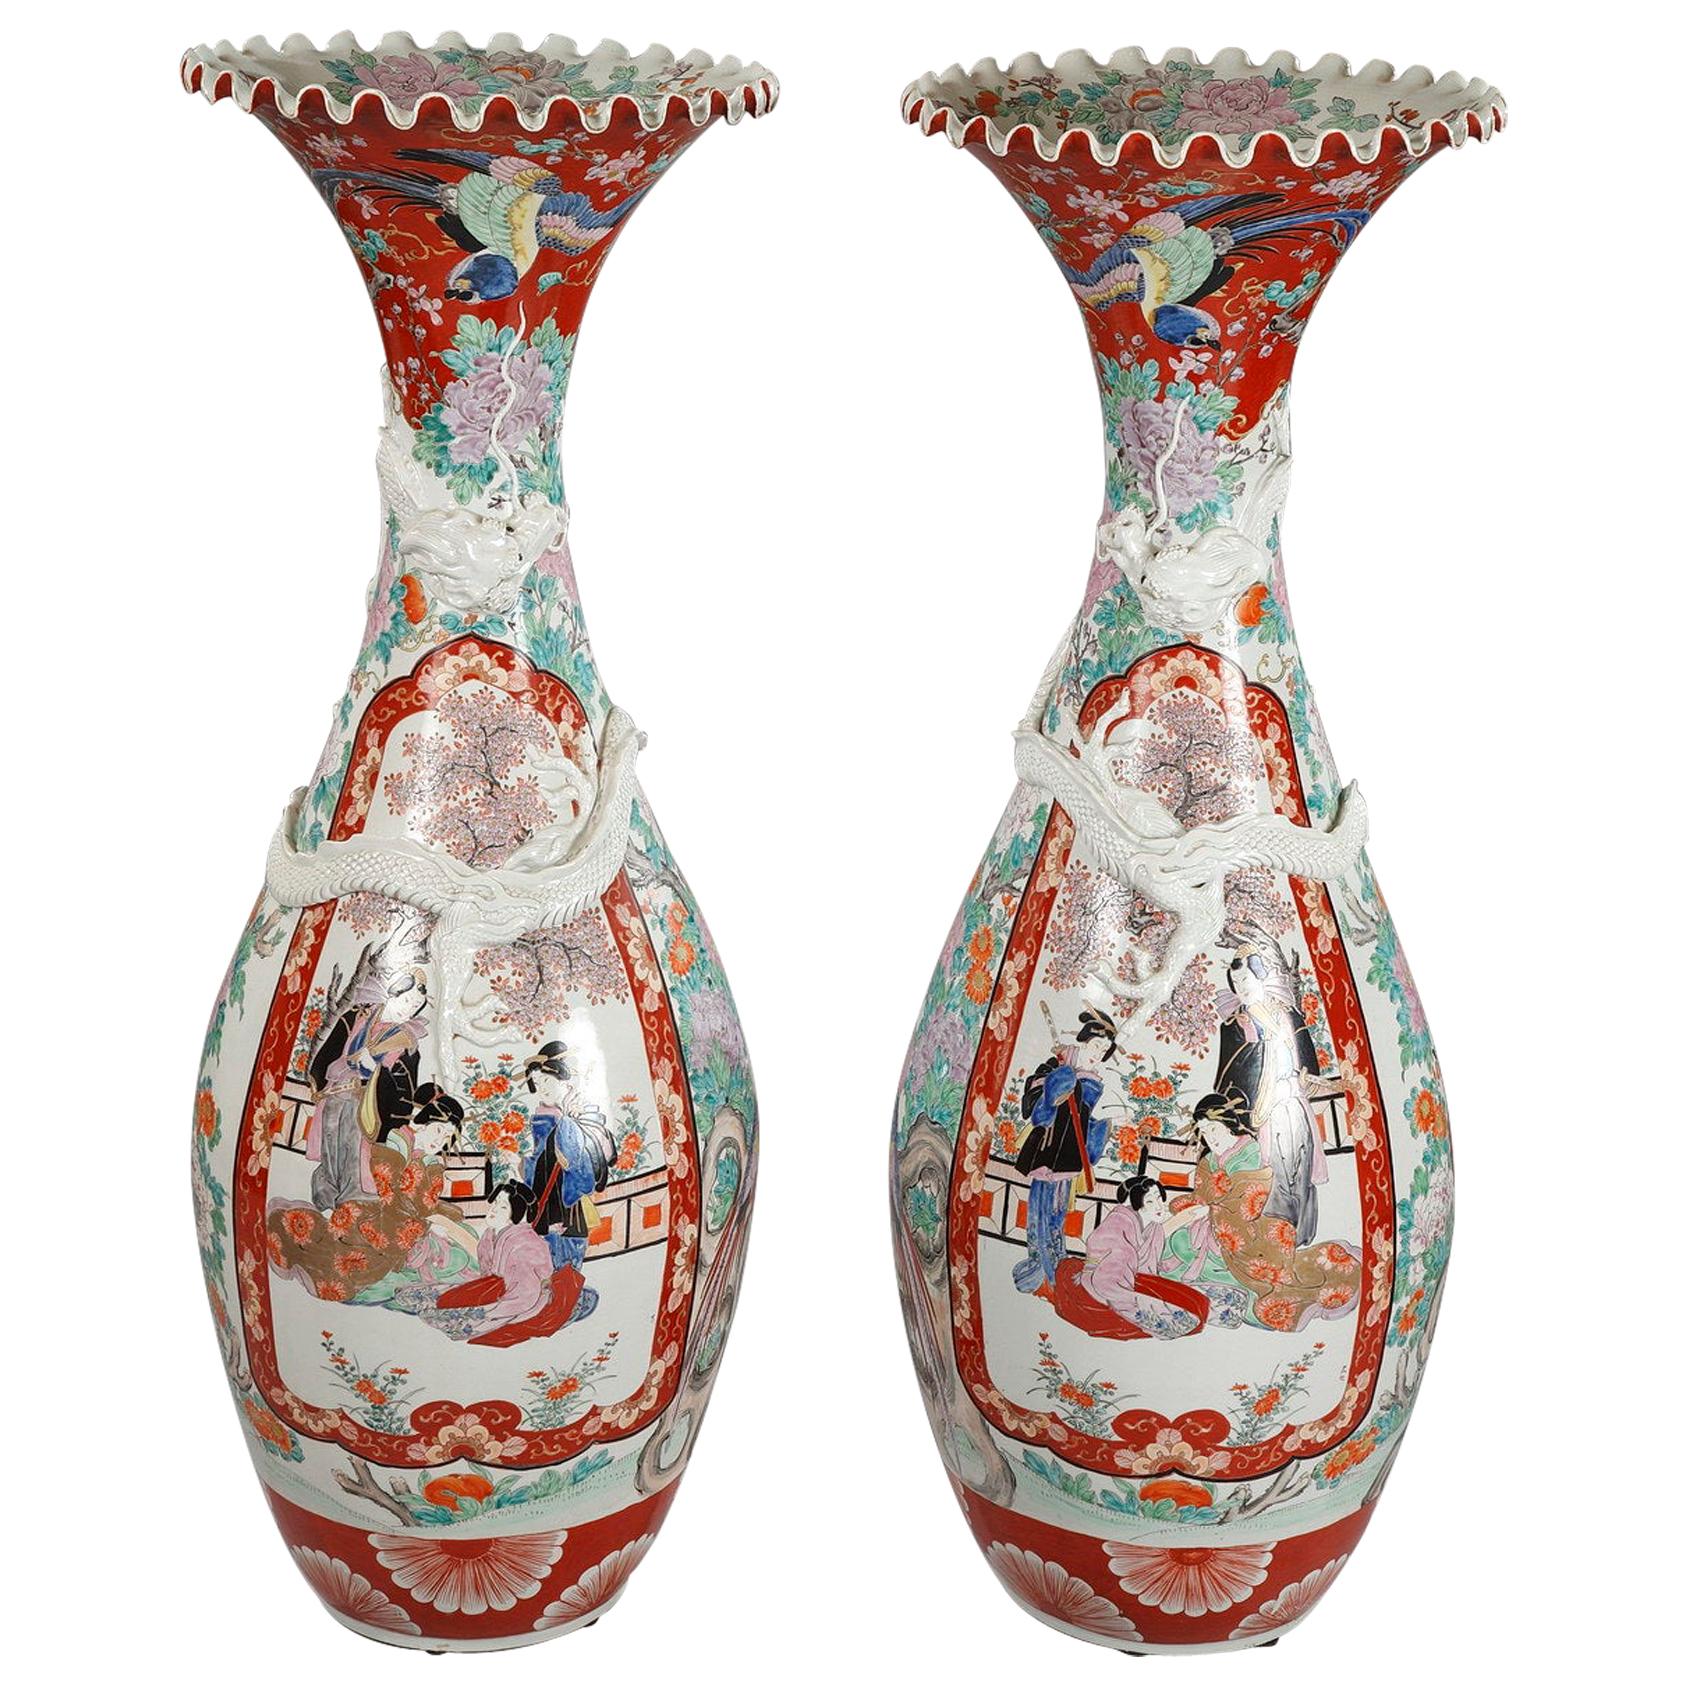 Paar große Vasen aus Imari Porcelain, Japan, Ende 19. Jahrhundert